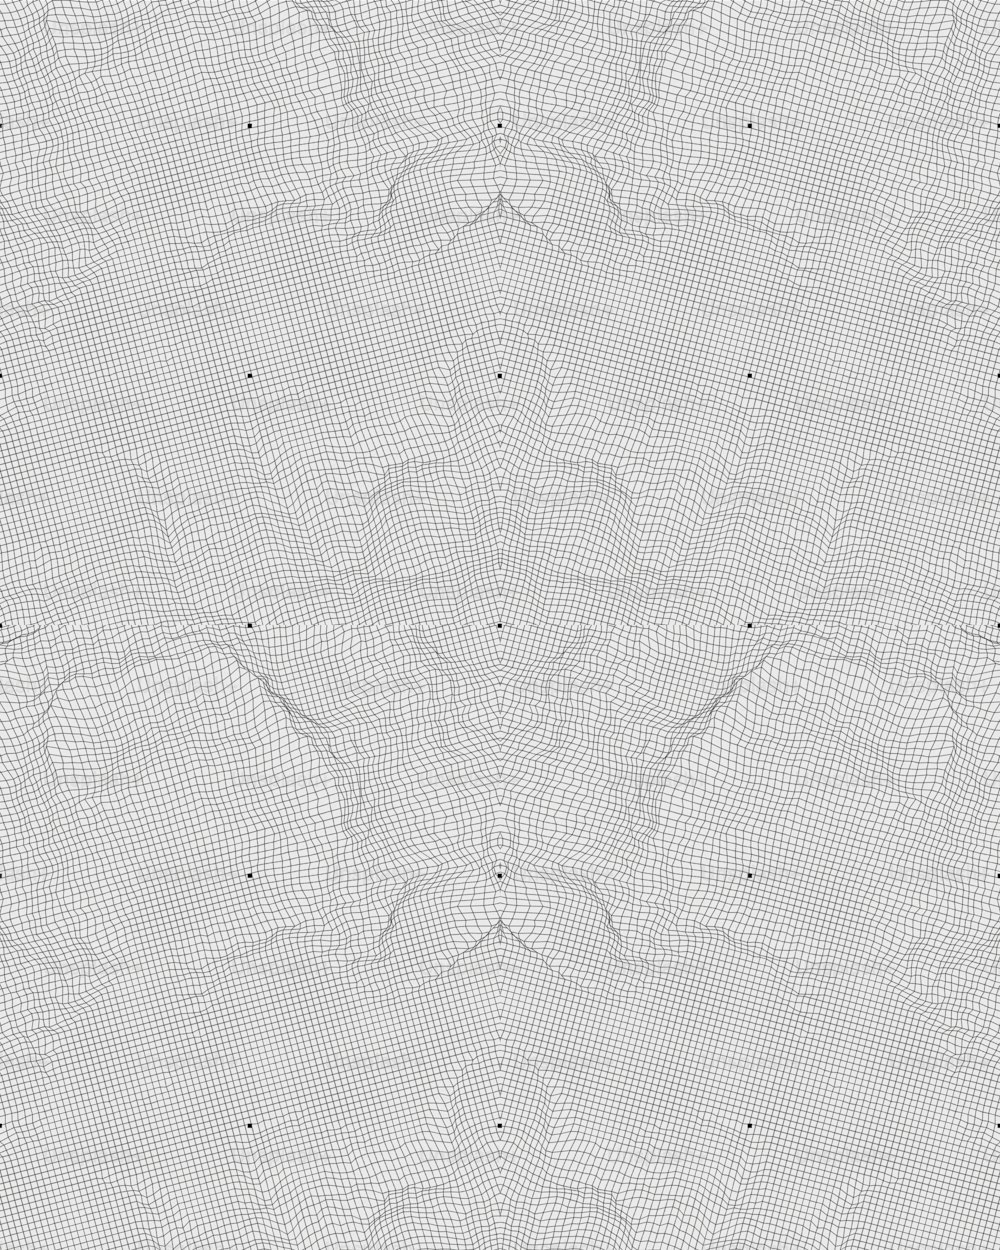 ein weißer Hintergrund mit einem Muster von Kreisen